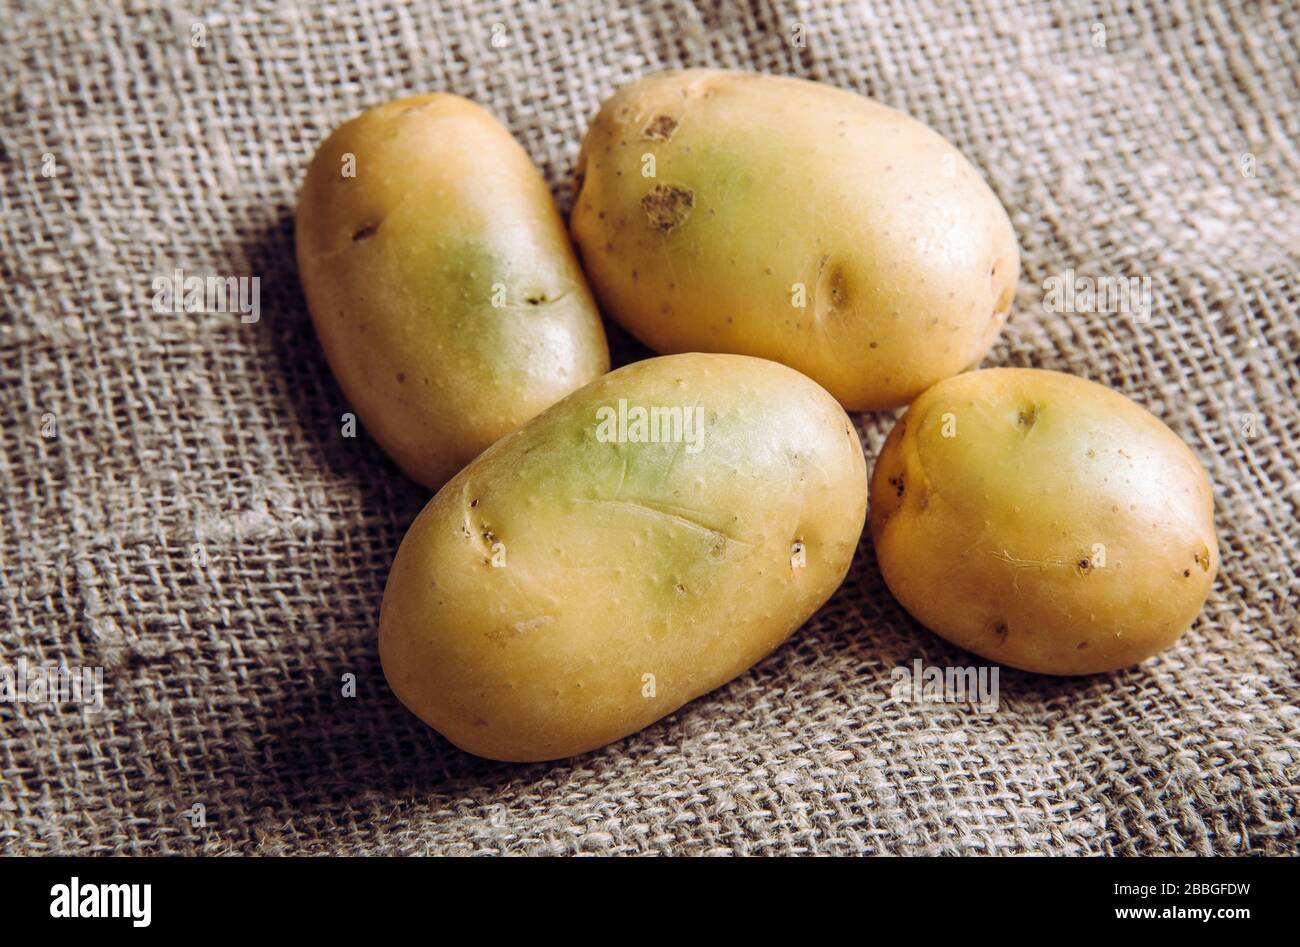 Sonnenlicht und Wärme verwandeln Kartoffeln Haut grün Witch enthält hohe Mengen eines Toxins, Solanin, das Krankheit verursachen kann und giftig ist. Kaufen Sie nicht und Stockfoto